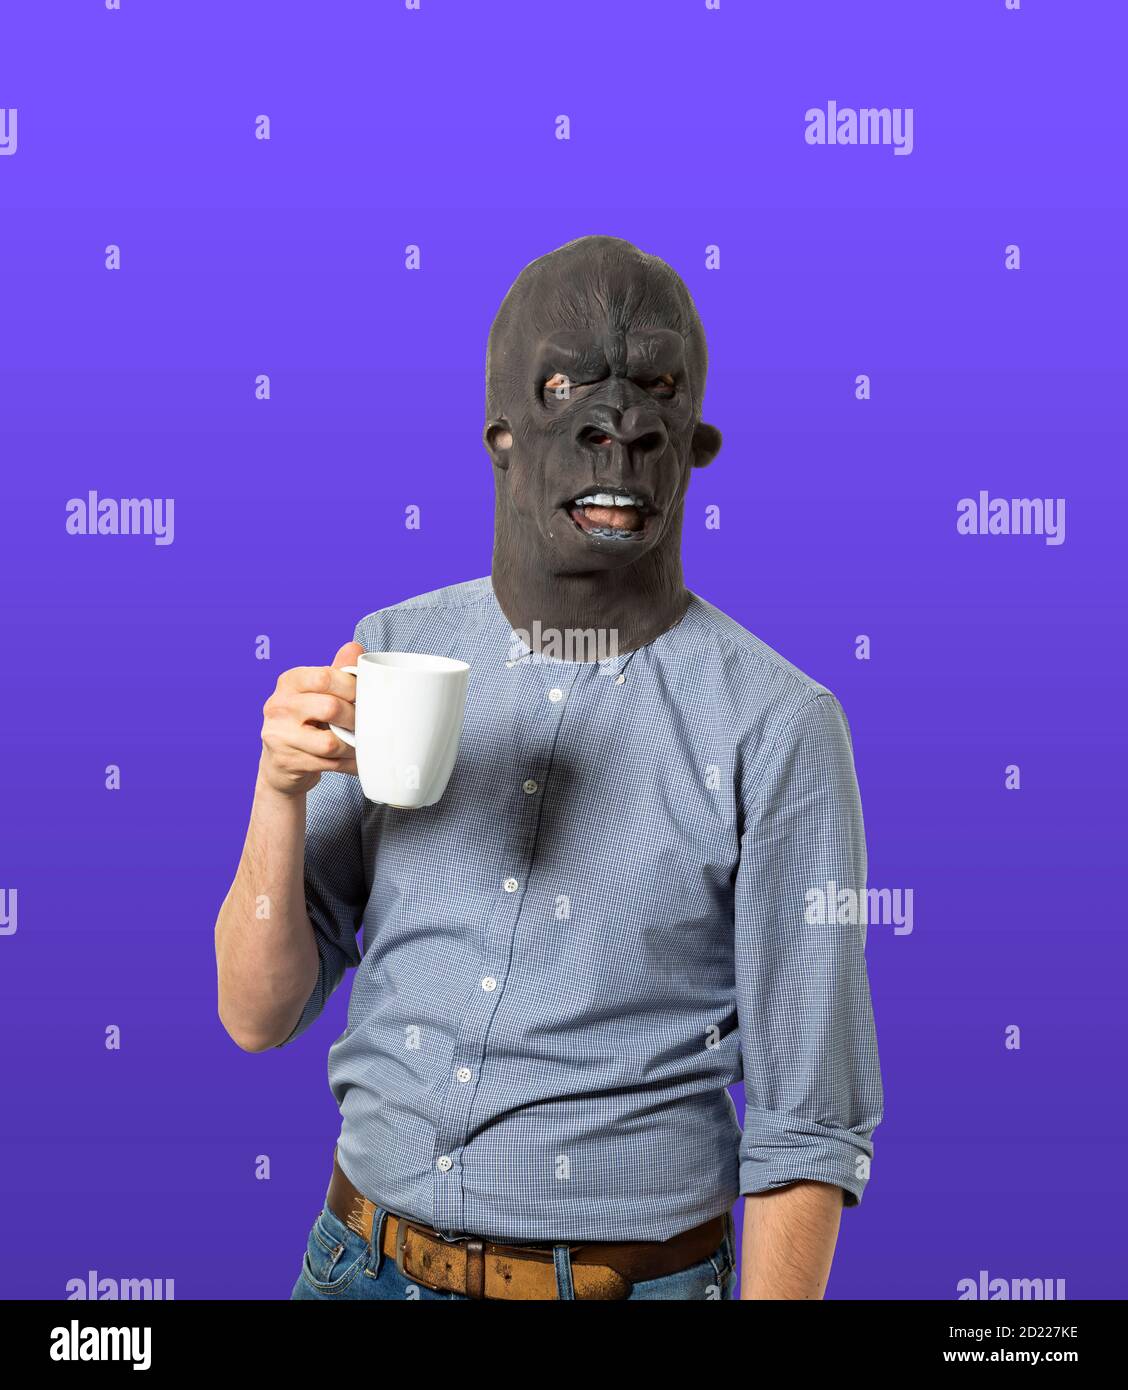 Man wearing gorilla mask holding coffee mug on isolated blue background. Medium shot. Stock Photo